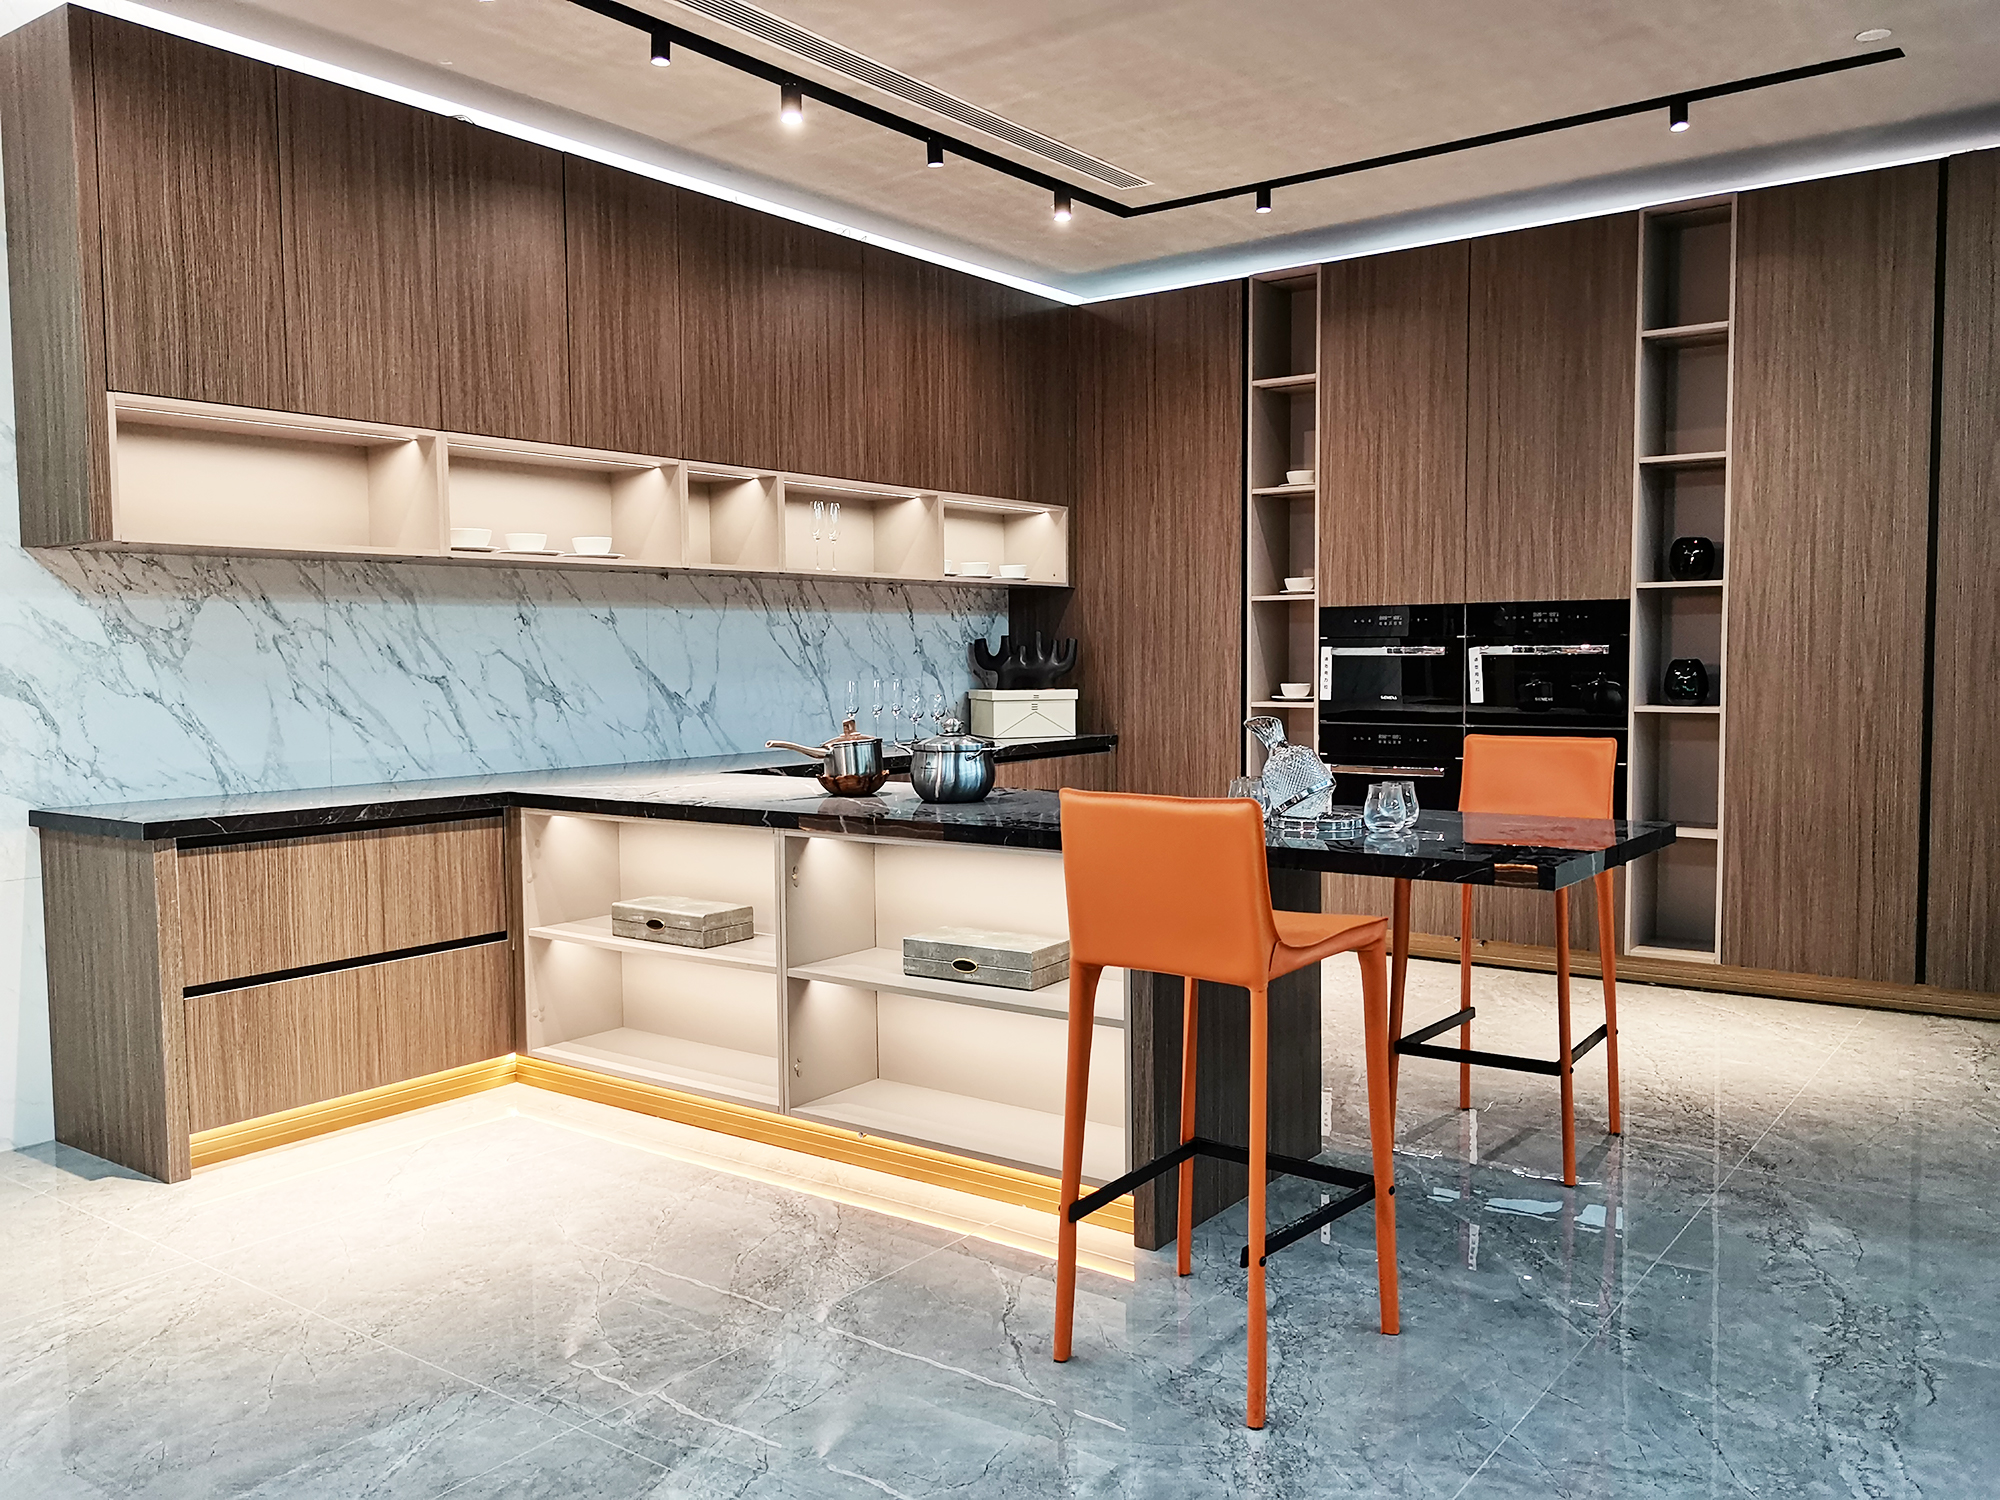 「开放式岩板厨房 t型岛台」打造高品质餐厨空间